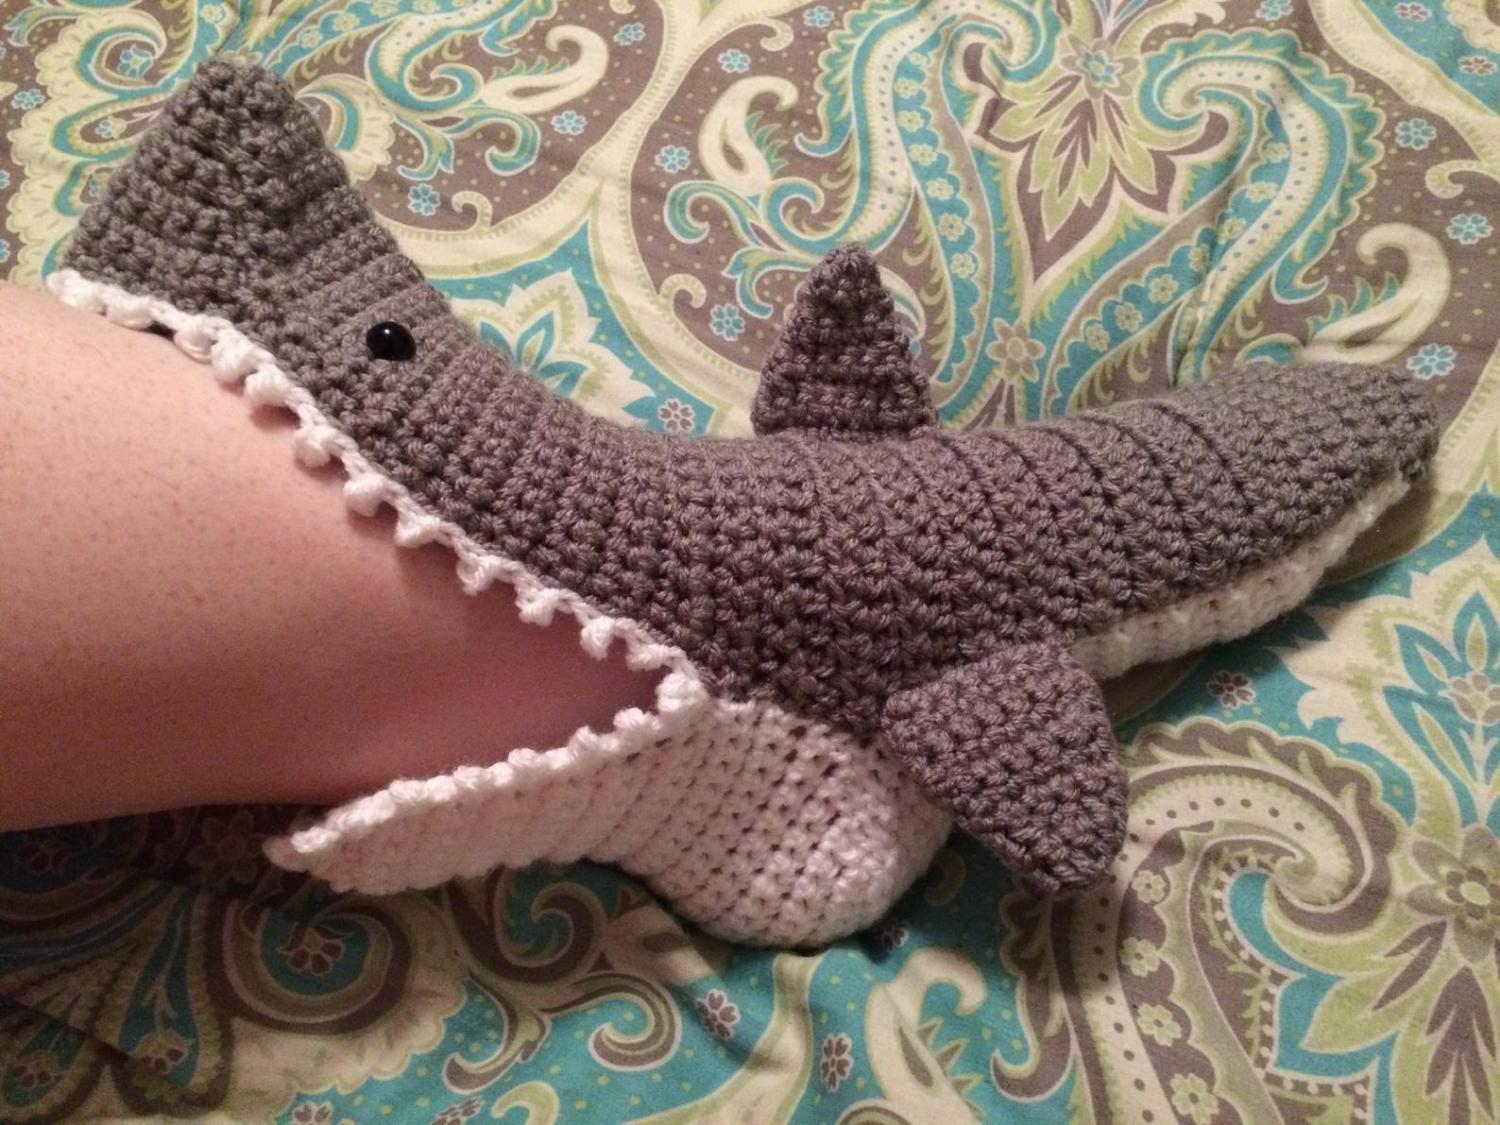 Crochet Shark Bite Slippers - Shark attach slippers